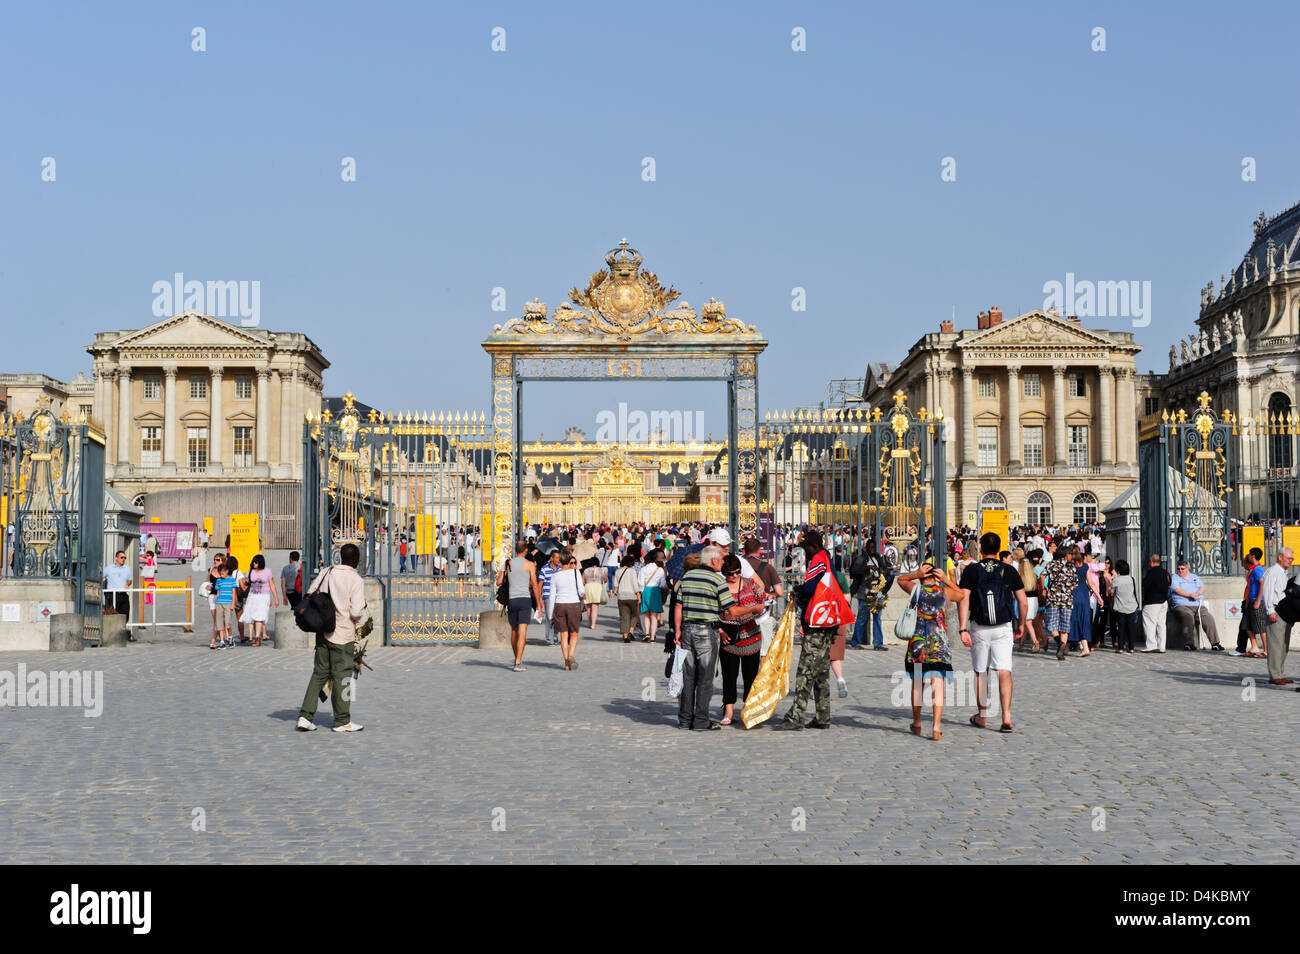 L'extérieur du Palais de Versailles, France. Banque D'Images